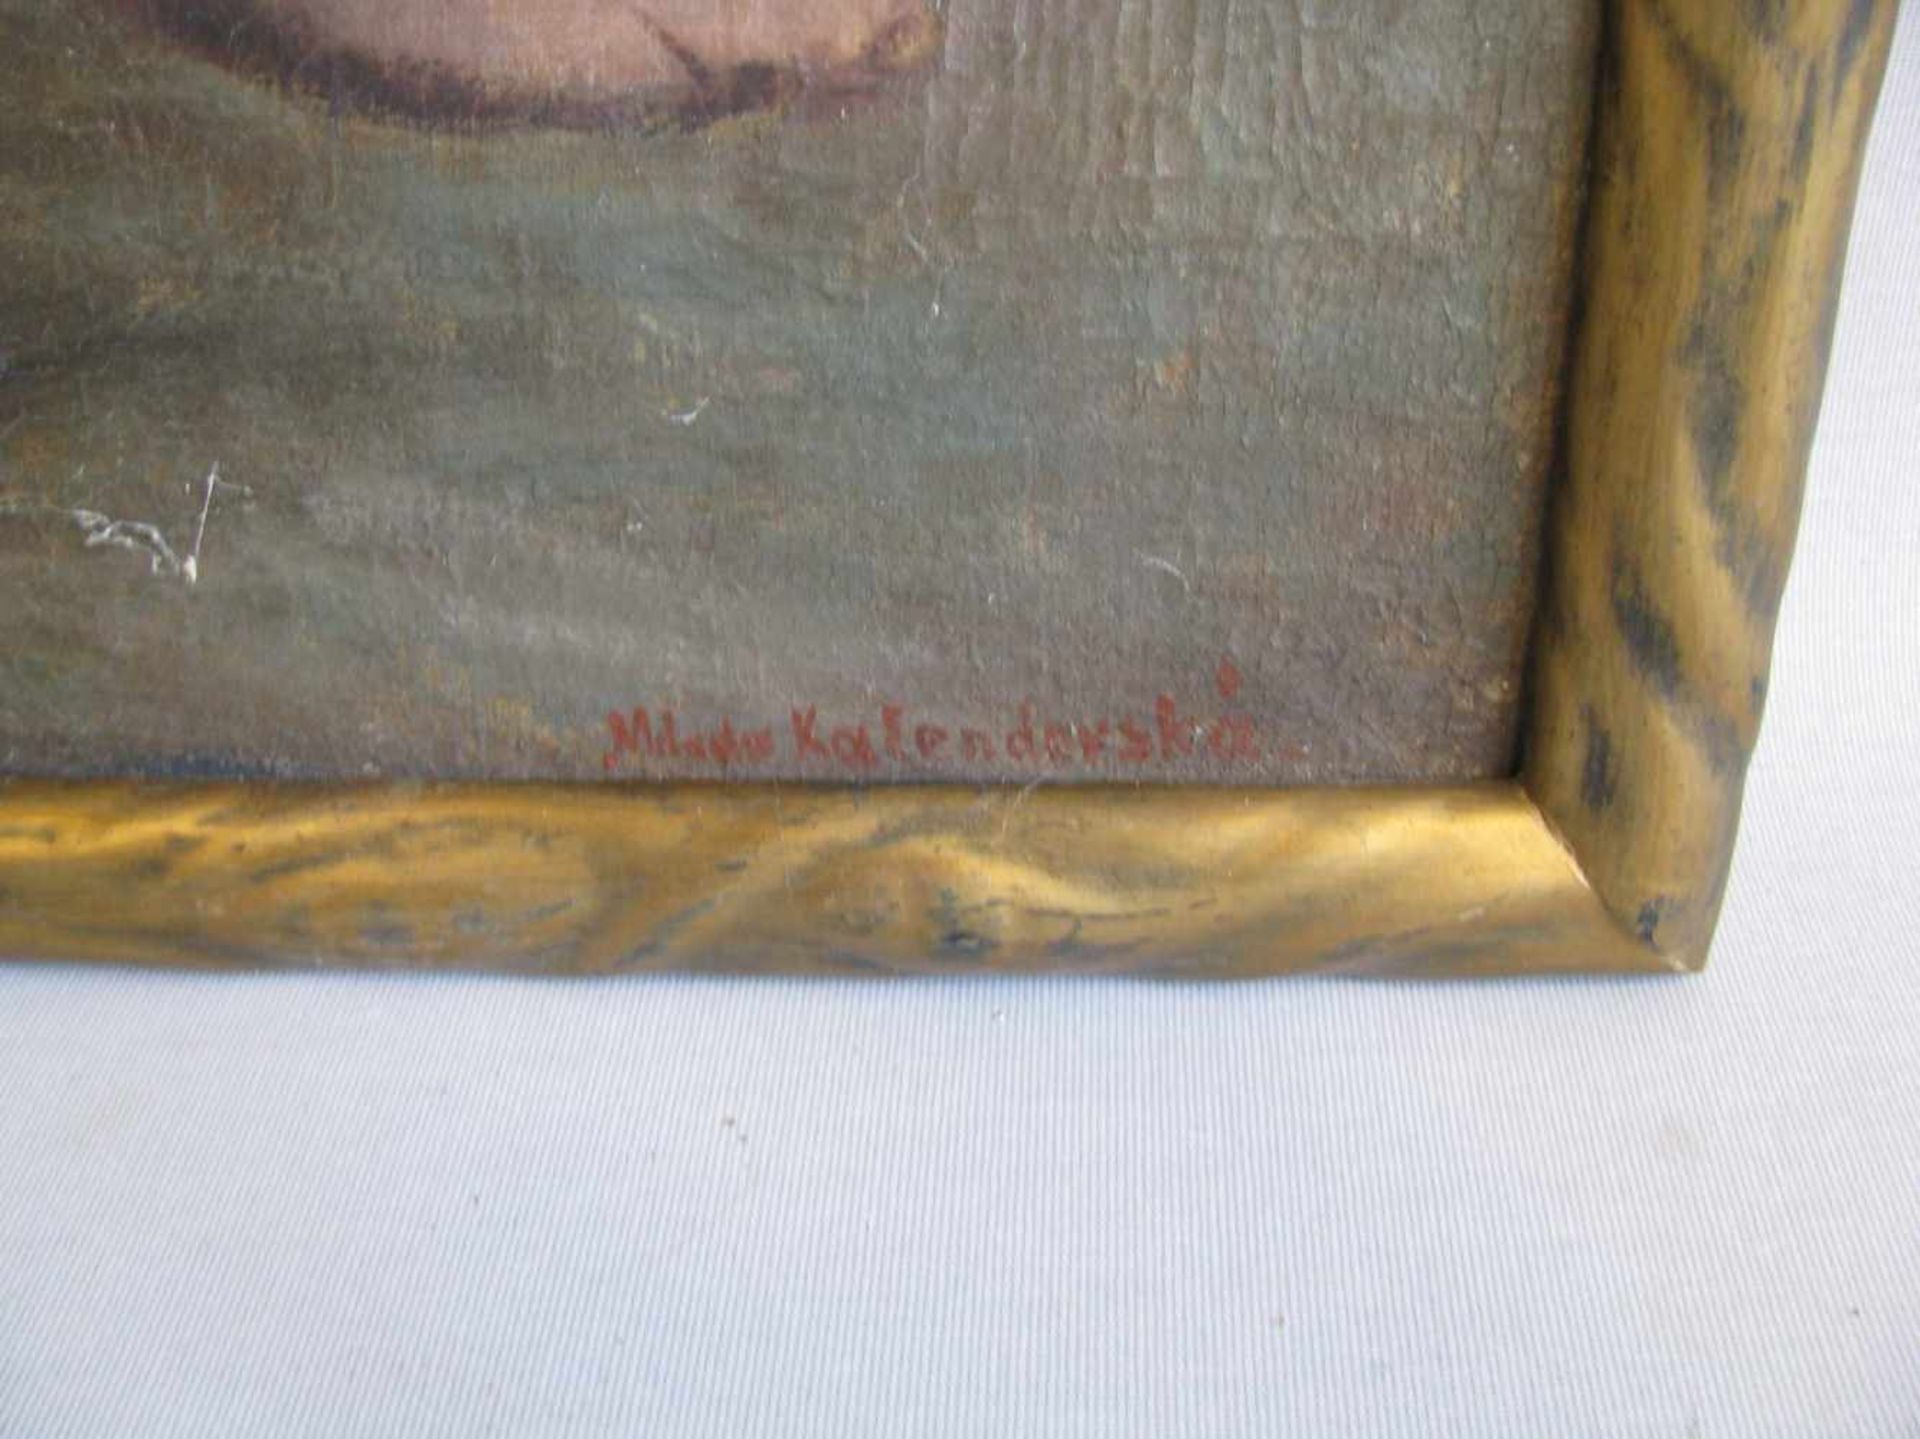 Kalenderski, Milada (?), "Weiblicher, sitzender Akt", re.u.sign., Öl/Leinwand, 95 x 70 cm, R. - Image 2 of 2